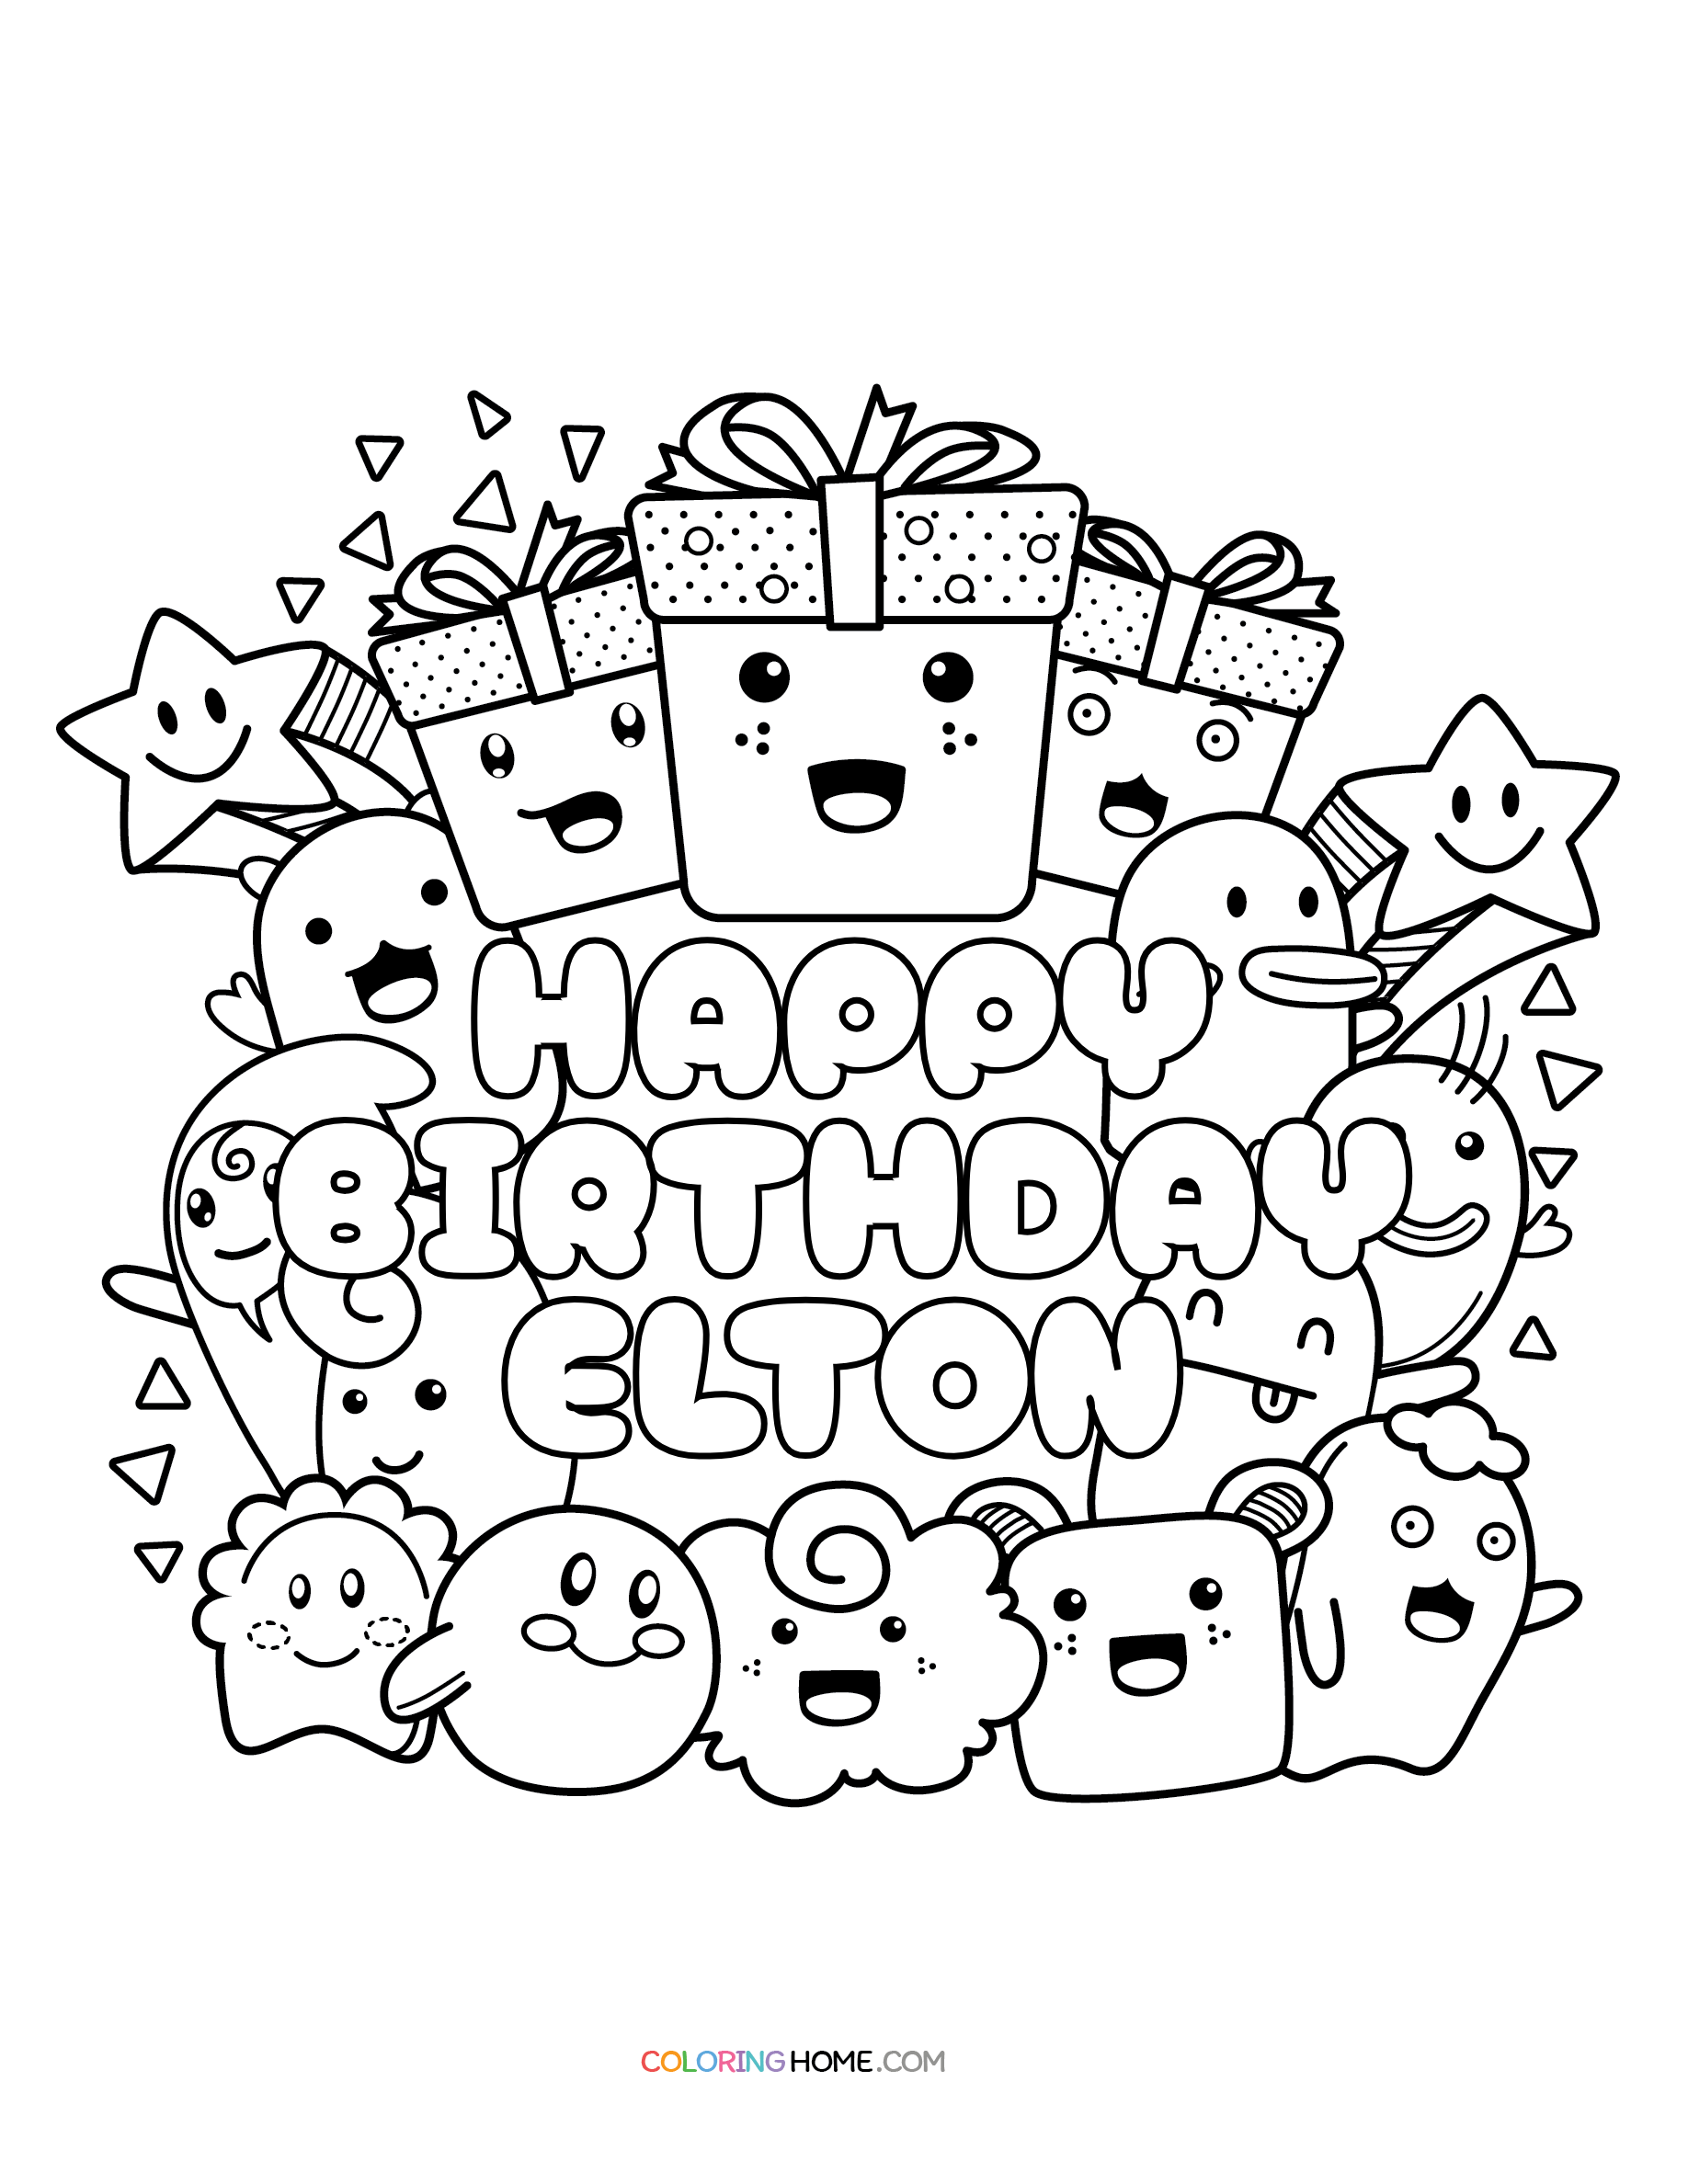 Happy Birthday Elton coloring page